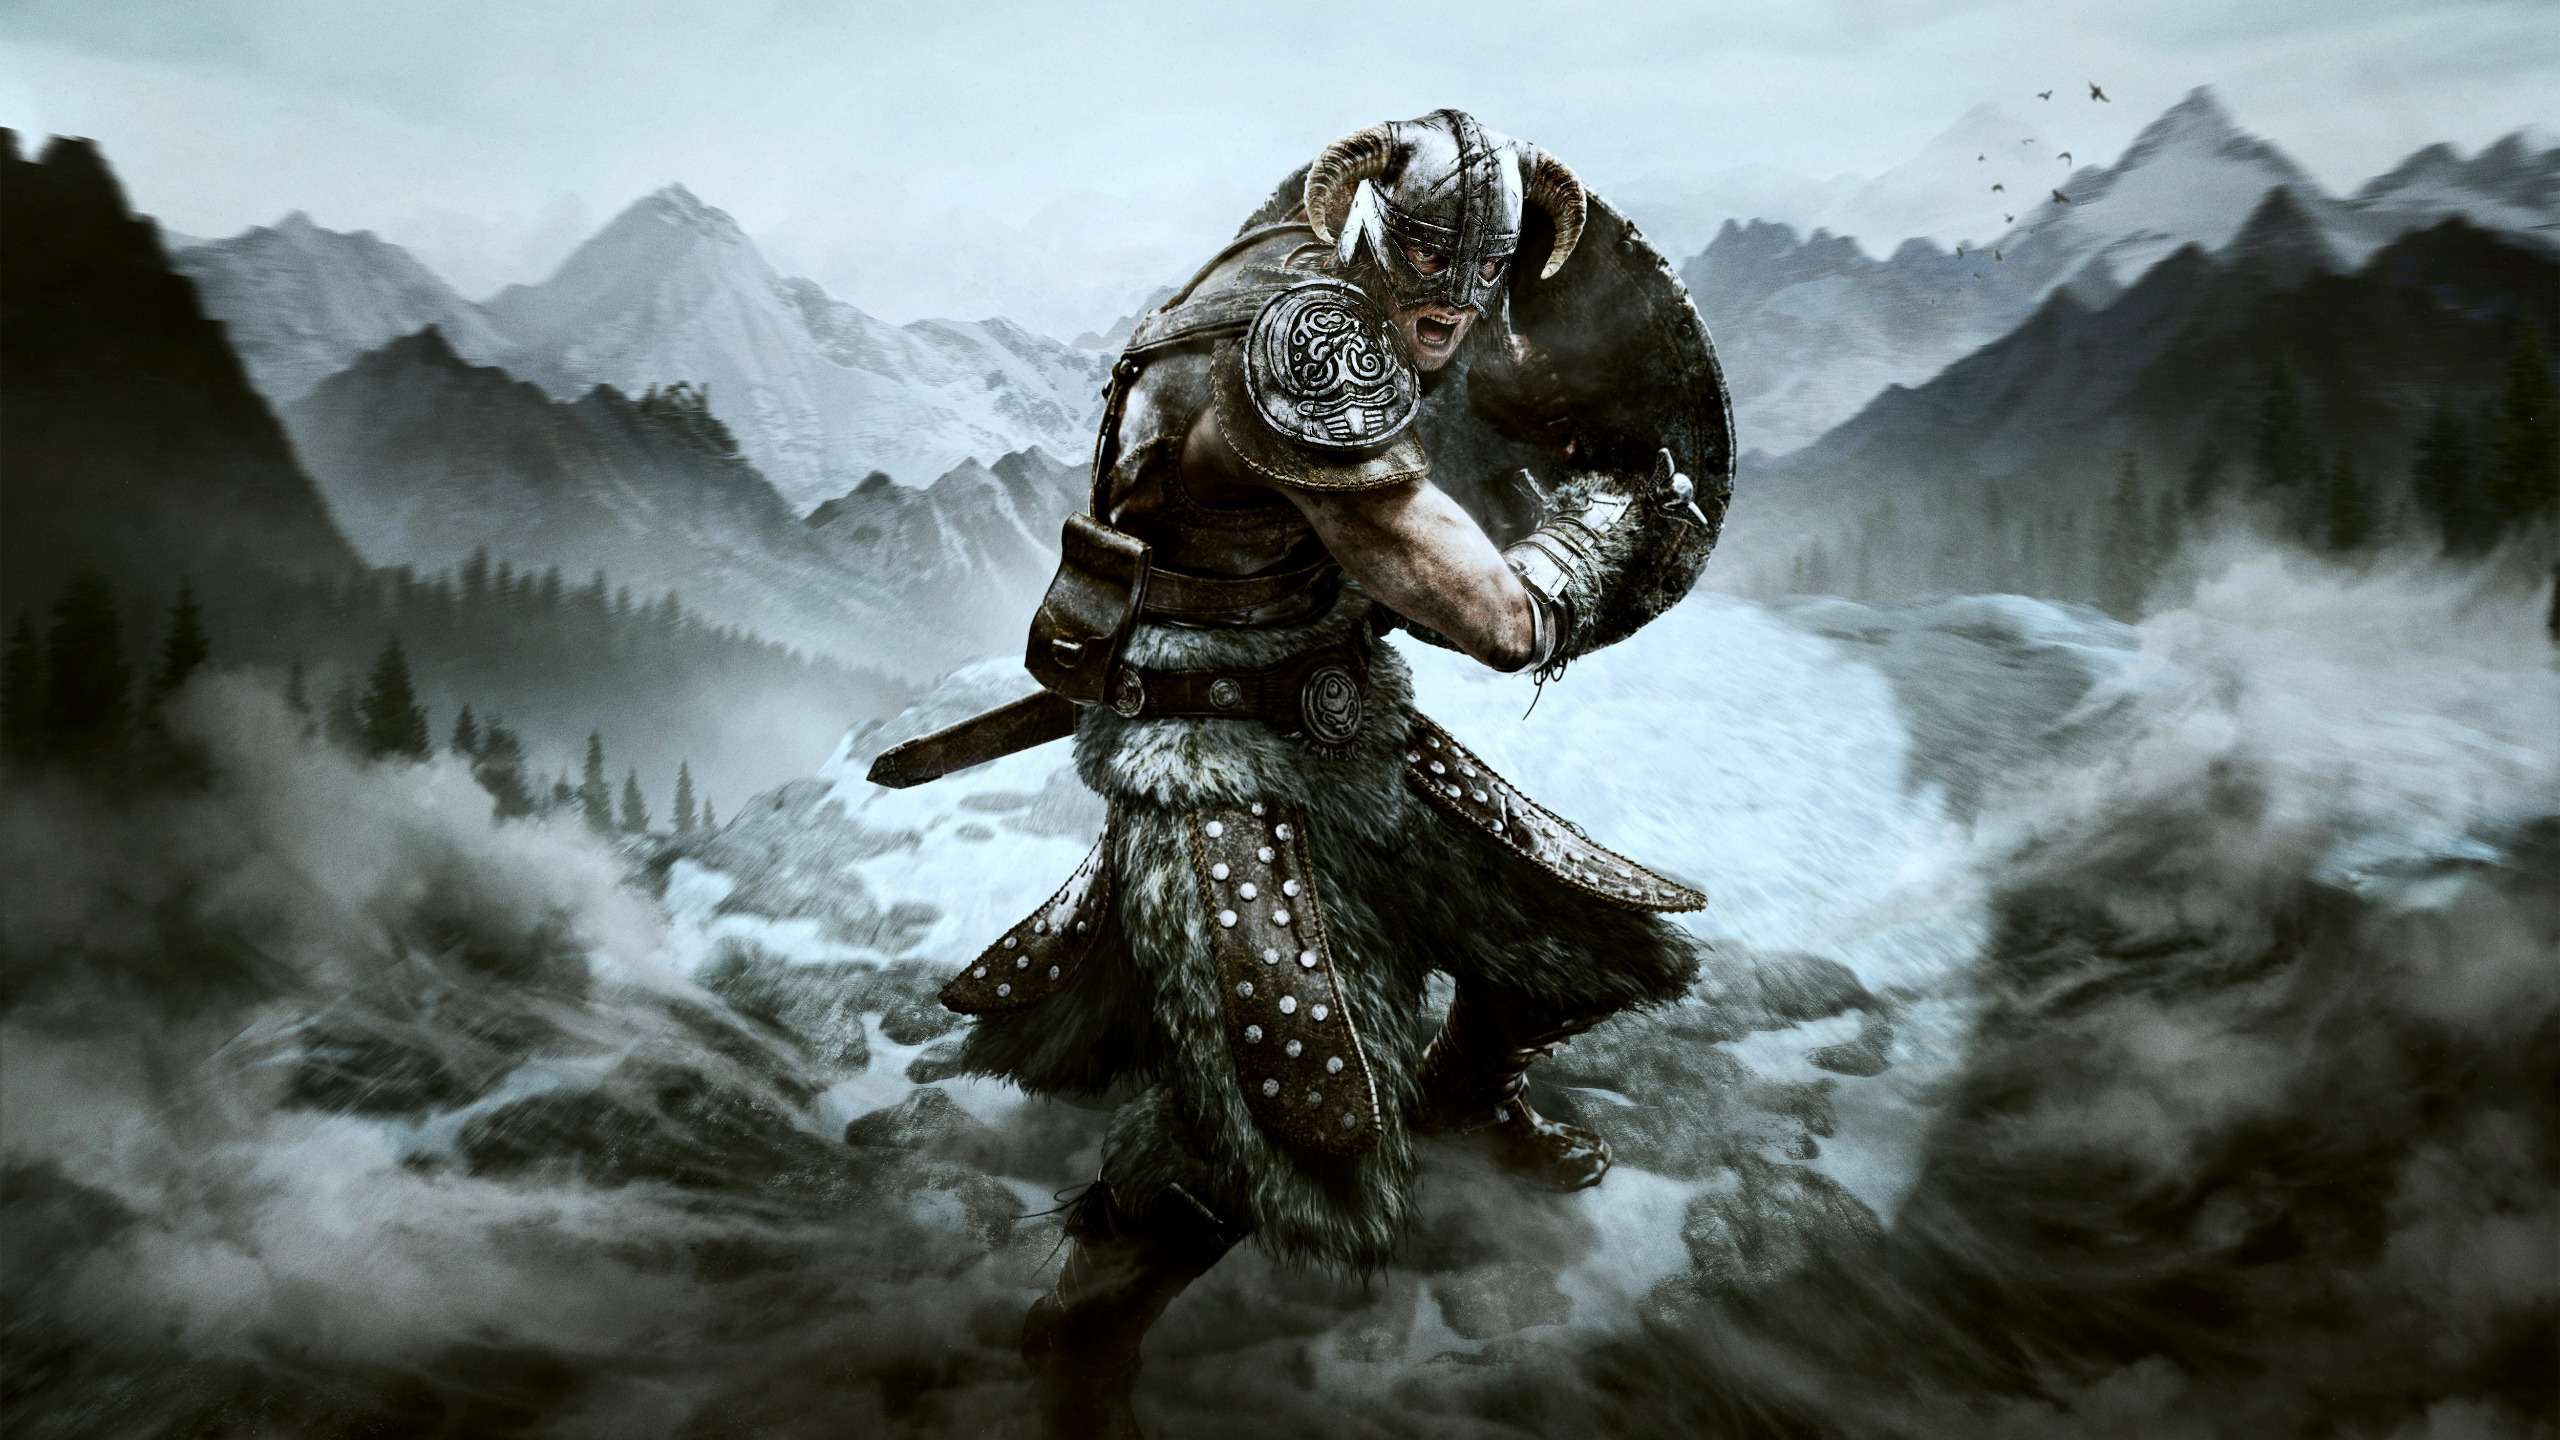 The Elder Scrolls V: Skyrim, PC gaming Wallpaper